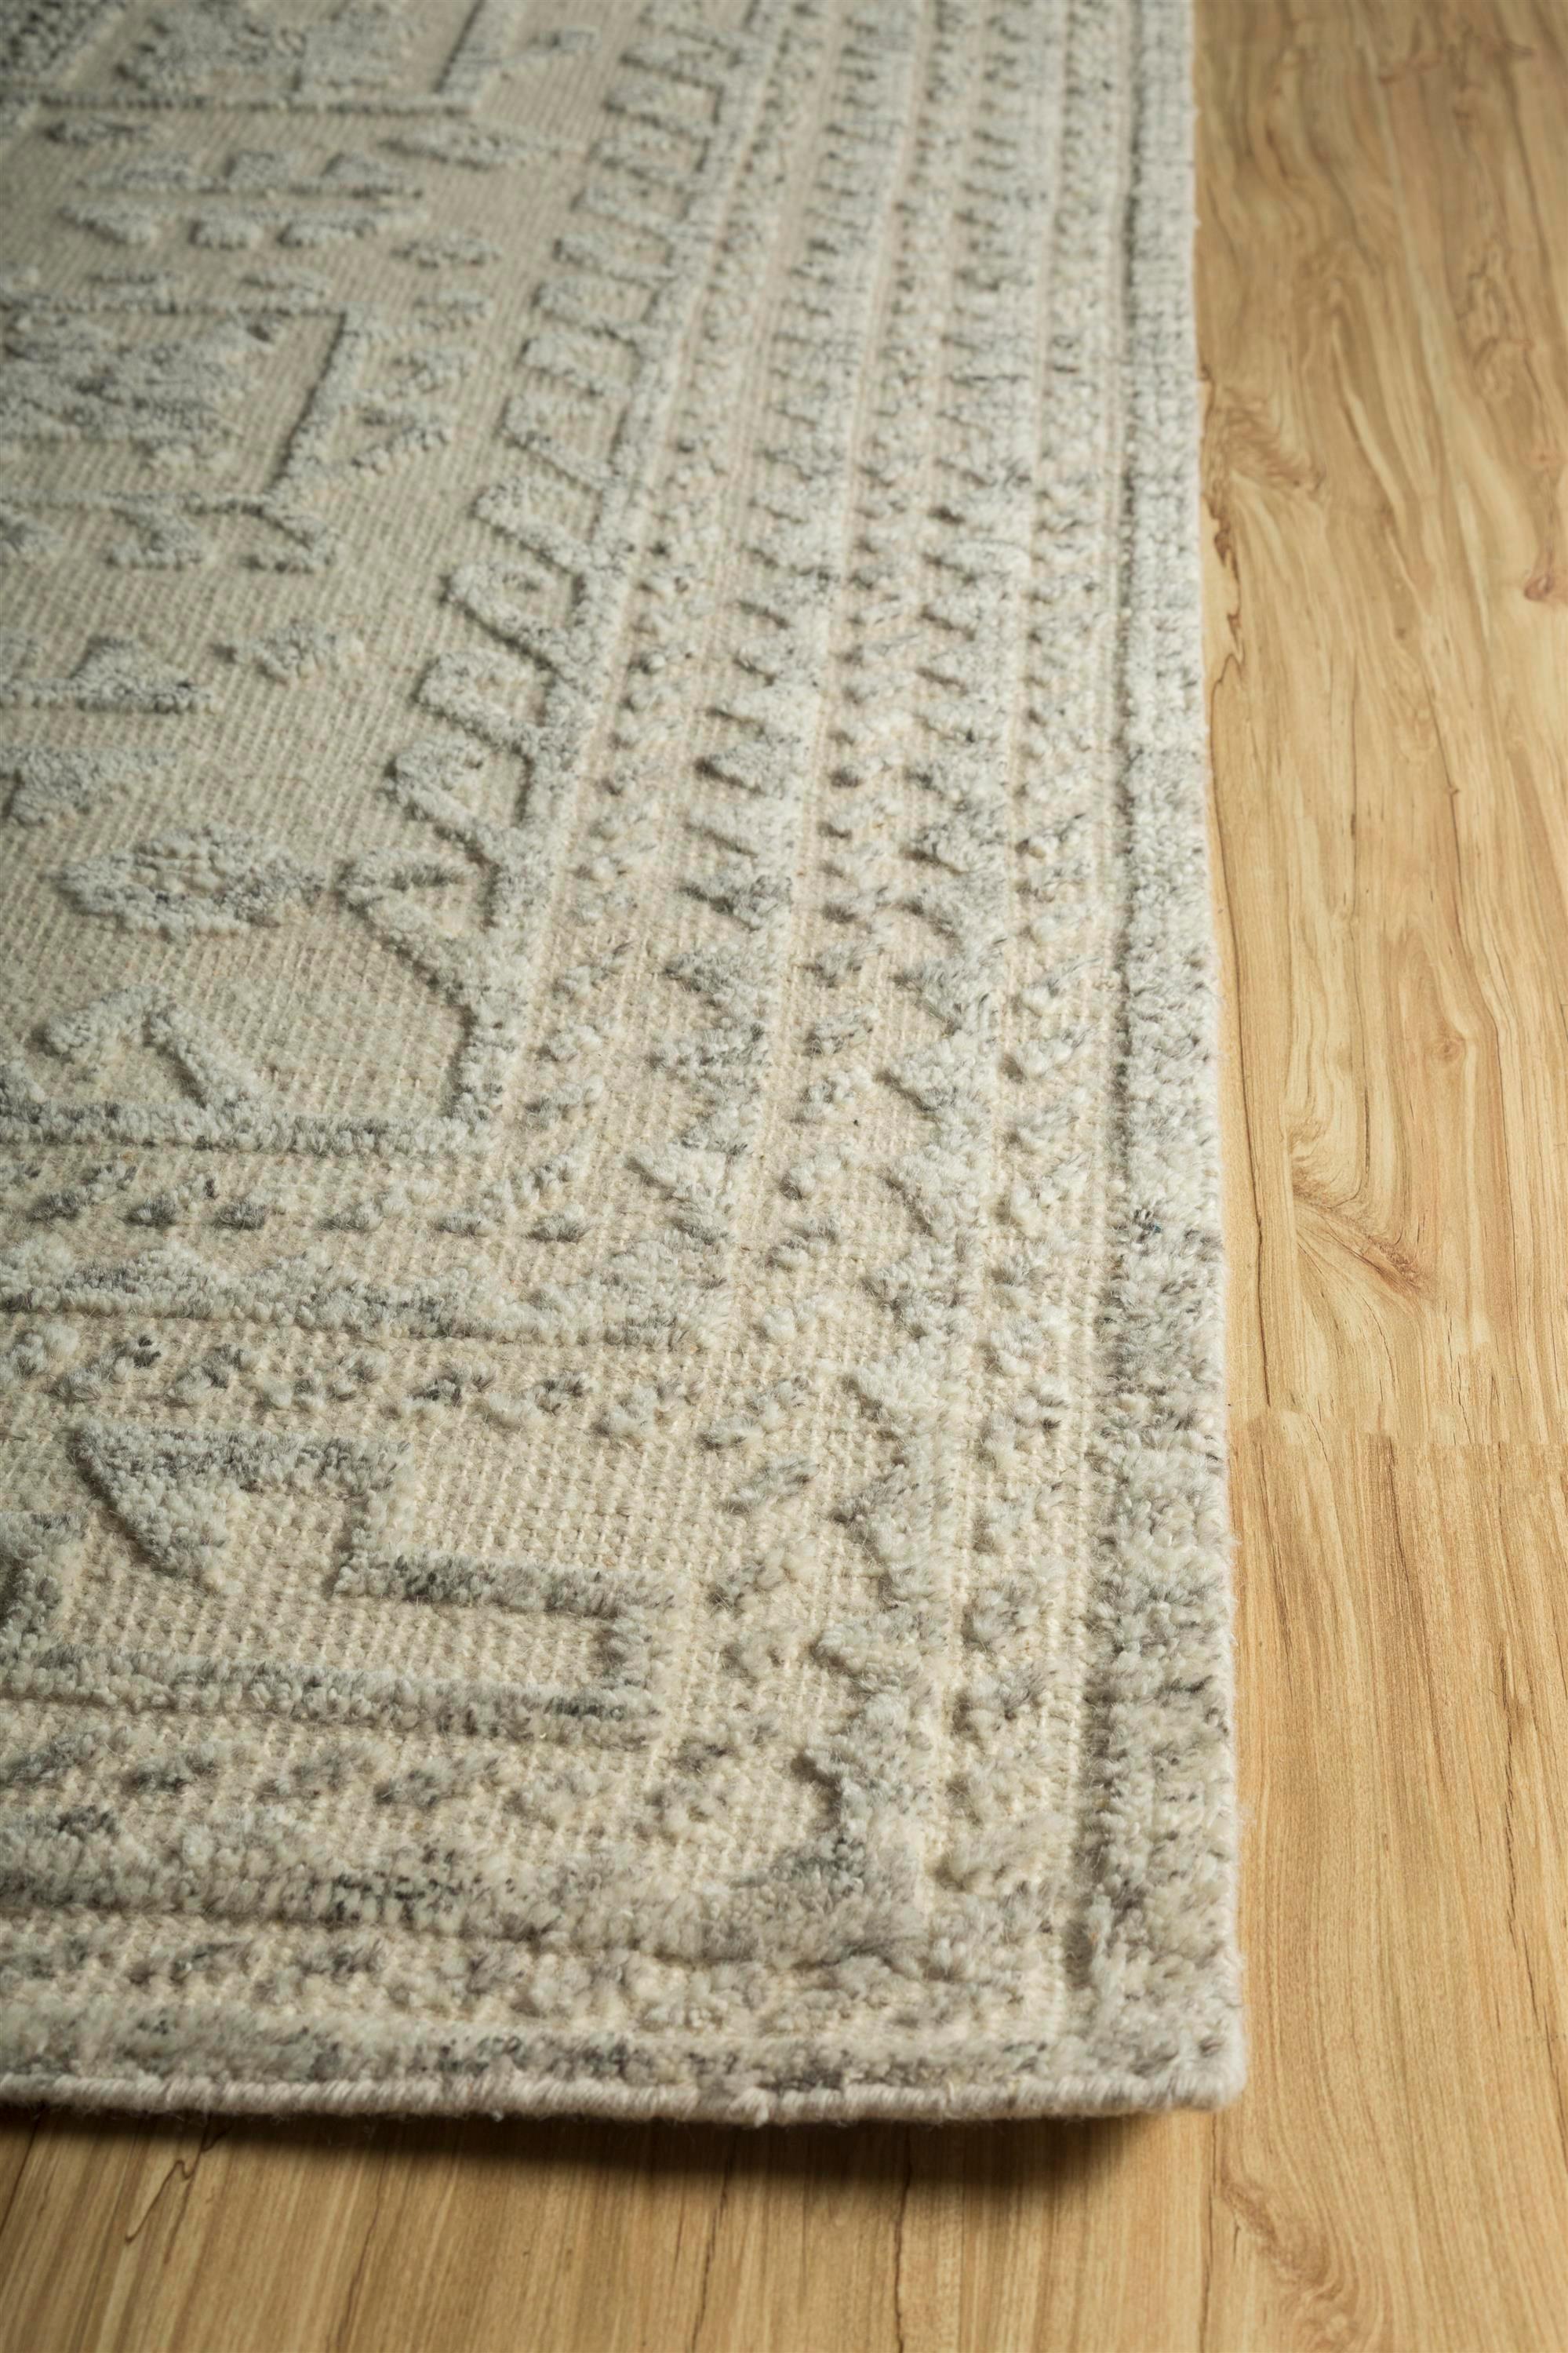 Dieser luxuriöse Teppich aus der Manifest Collection'S verbindet Eleganz mit natürlichem Charme. Die Grundlage des Teppichs ist mit einem beruhigenden, natürlichen Off-White-Farbton verziert, der an unberührten Schnee erinnert und ein Gefühl von